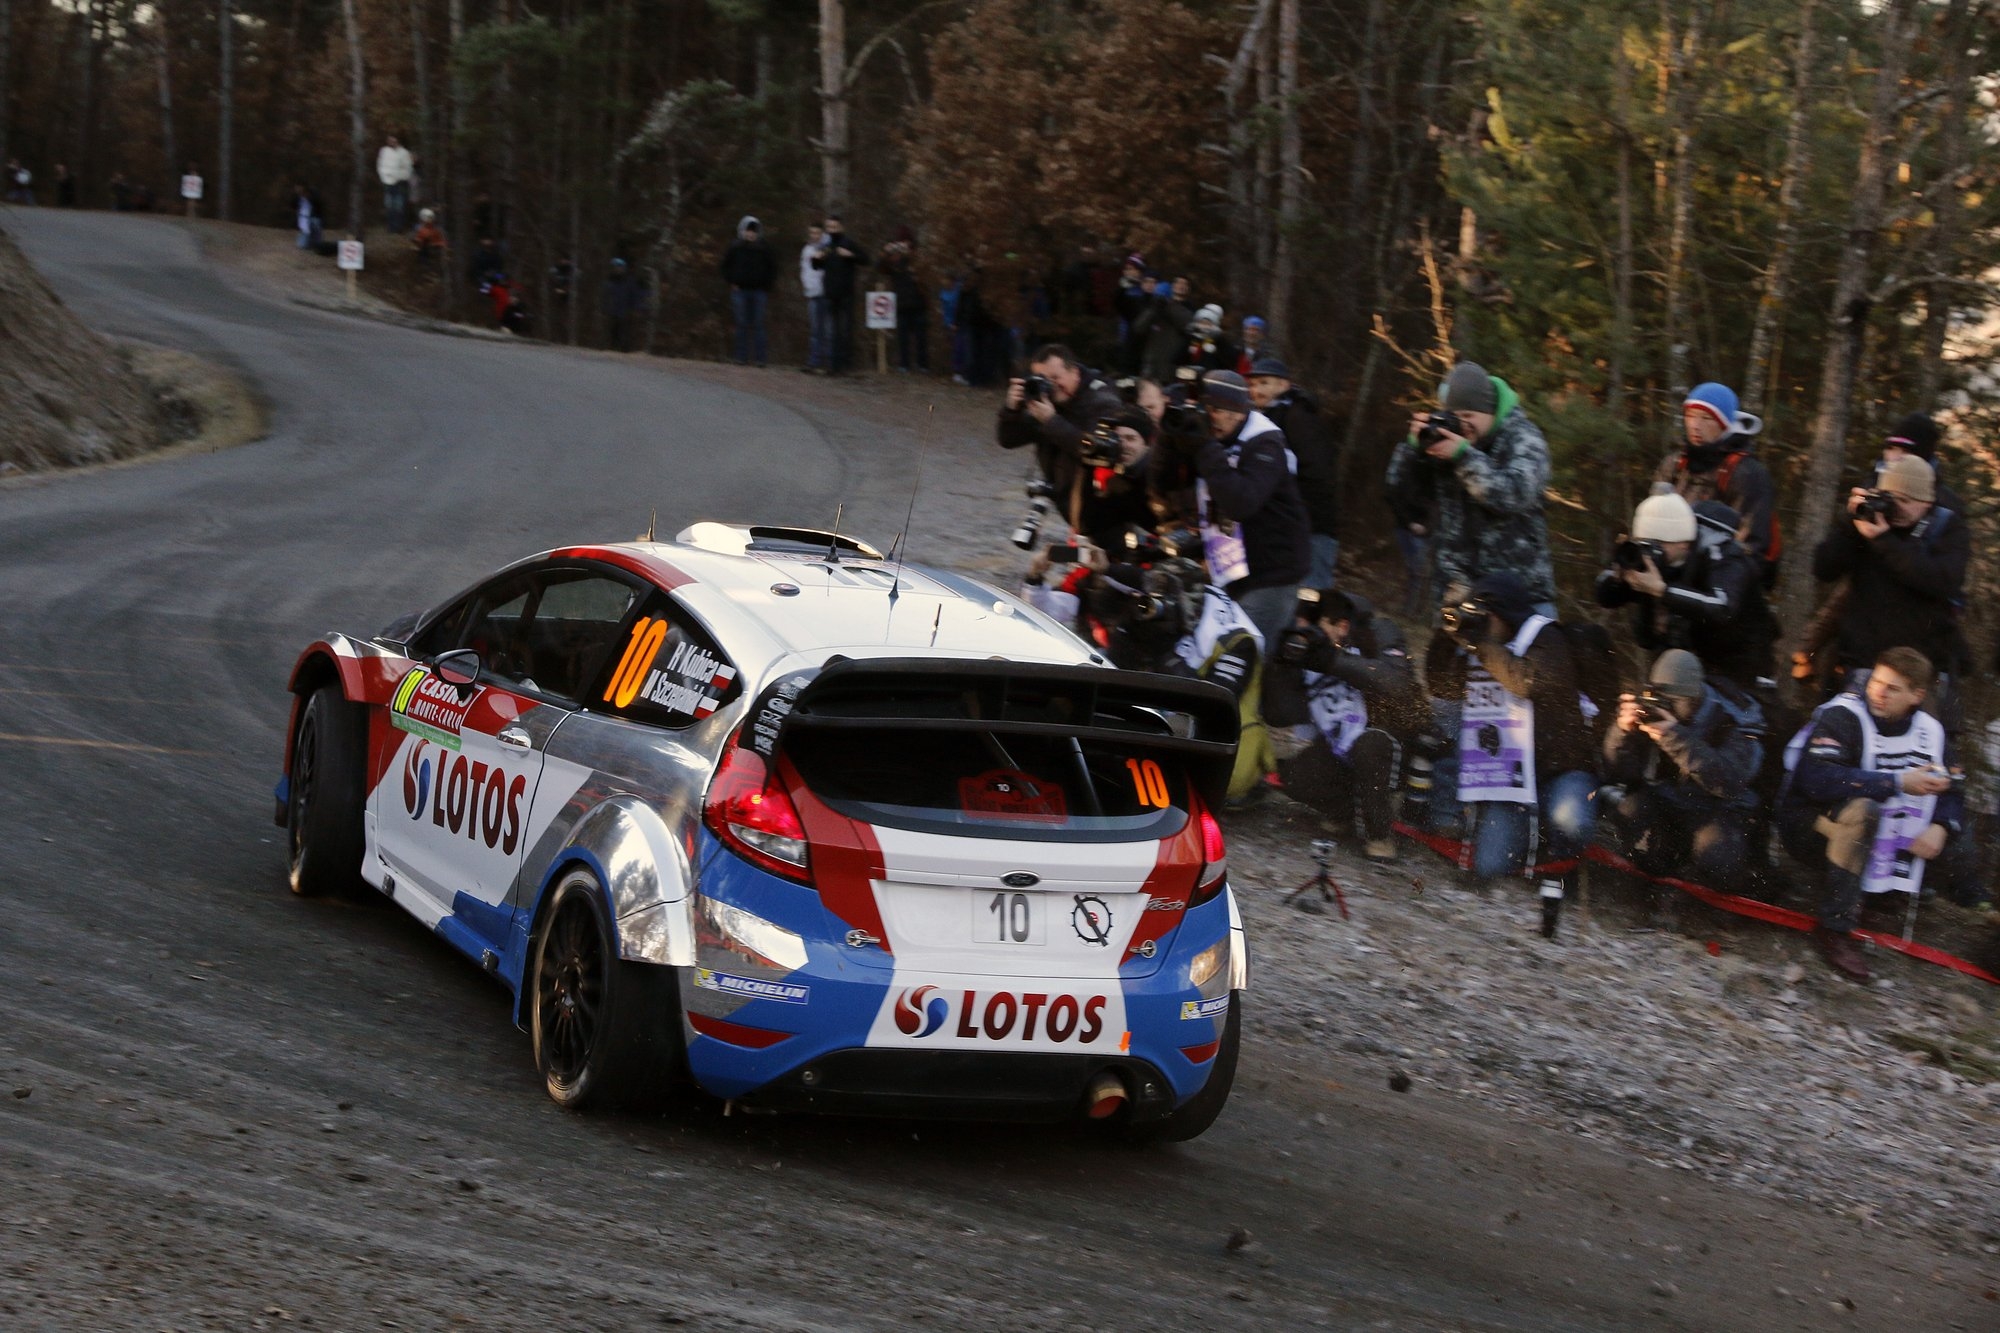 Kubica parteciperà al WRC 2015 con la Ford-LOTOS